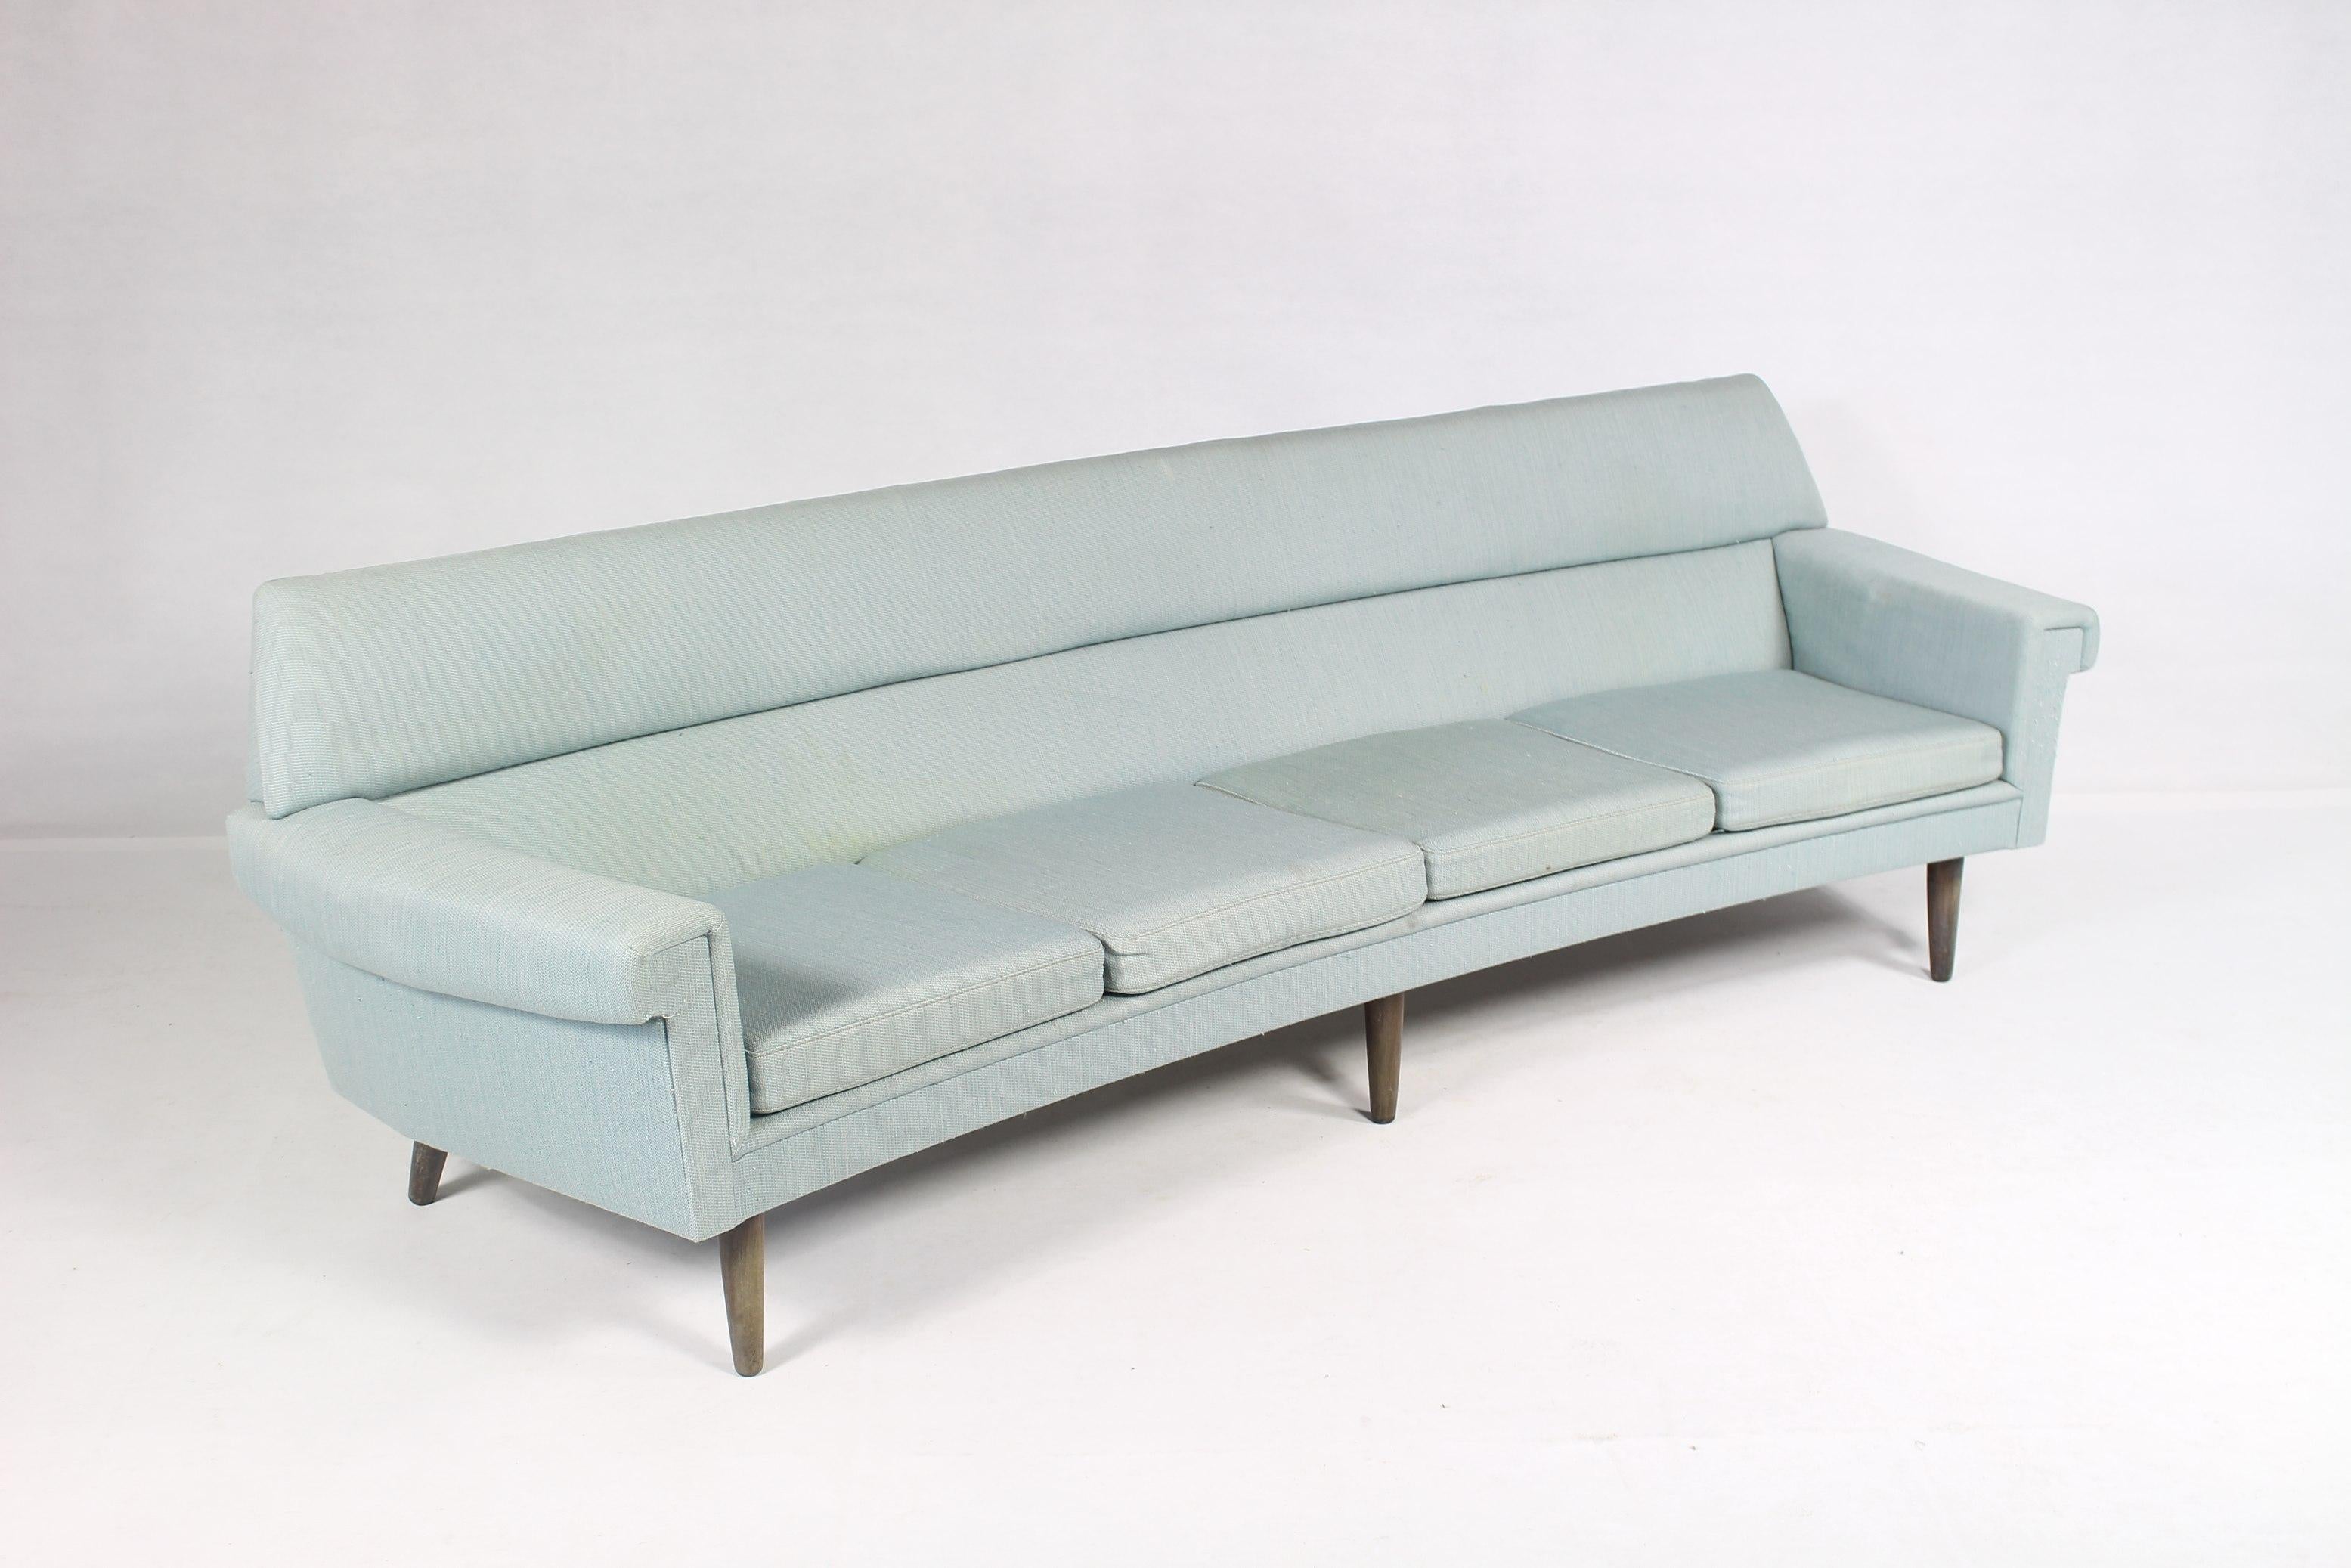 Dieses geschwungene Viersitzer-Sofa von Kurt Stervig ist mit vier Sitzen ausgestattet.
In Dänemark hergestellt, 1960er Jahre.
Gepolstert mit der originalen Wolle in Hellblau.
Es wird empfohlen, die Polsterung zu ersetzen.